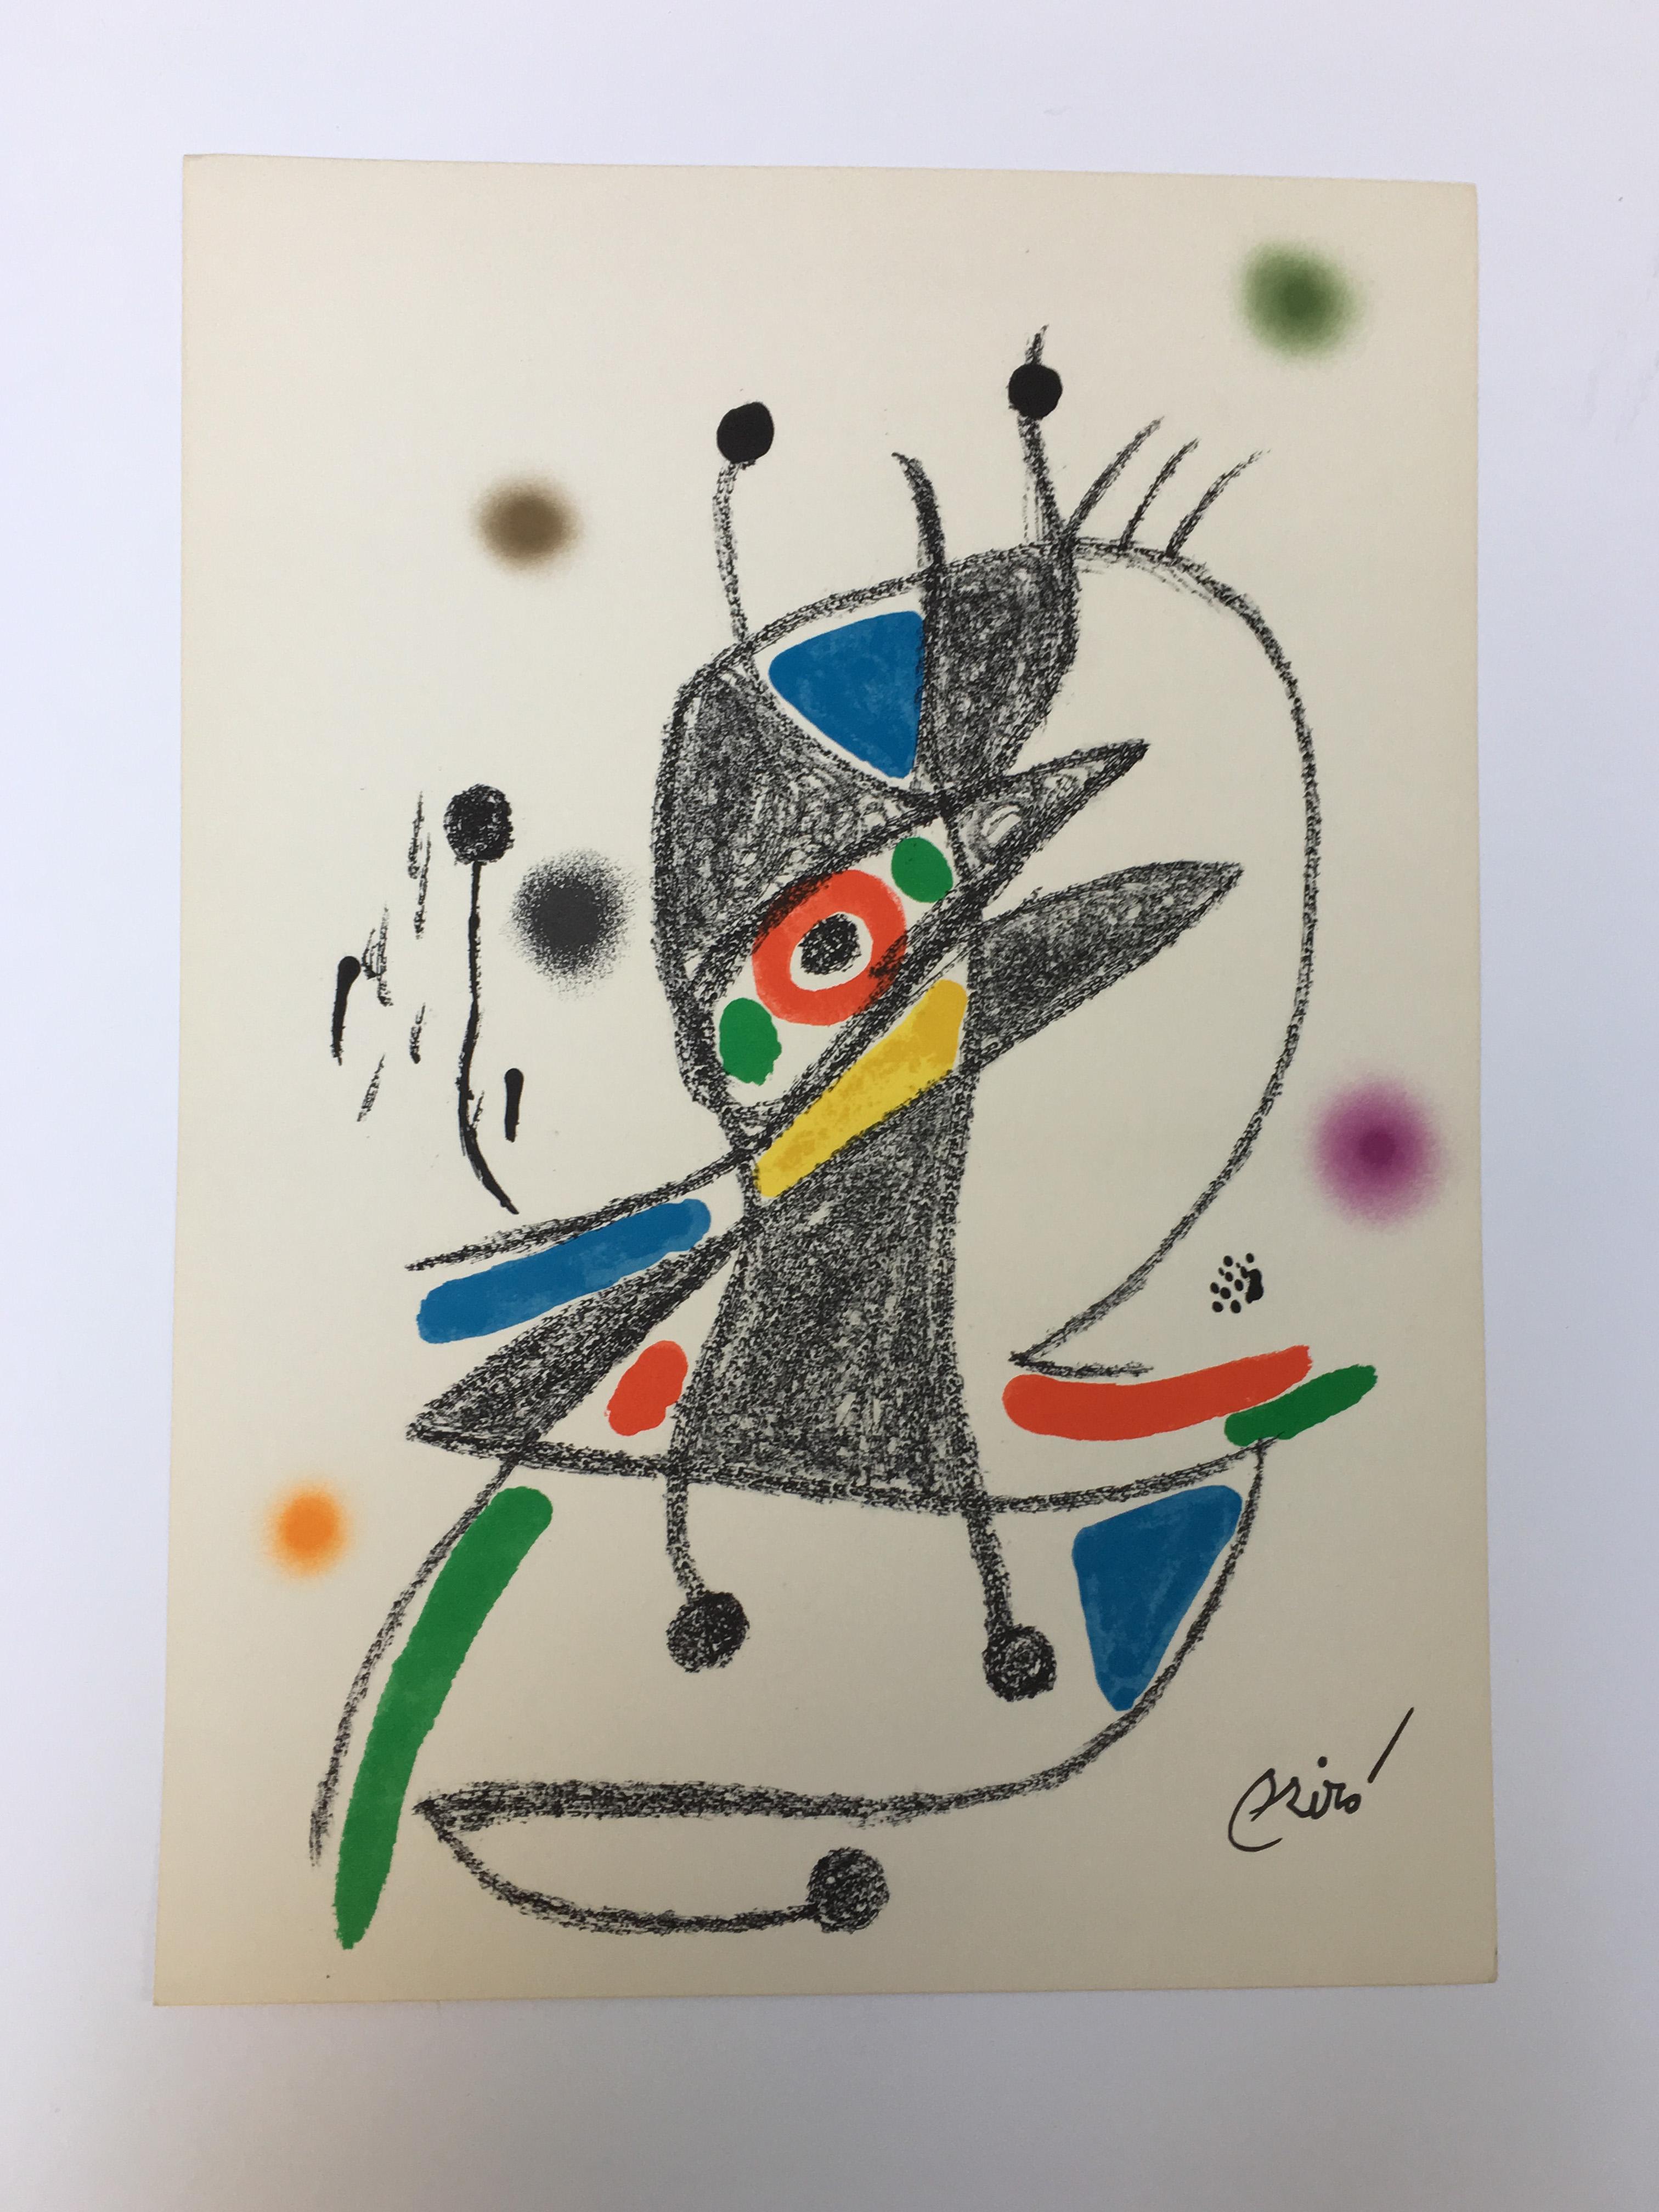 Maravillas con Variaciones Acrosticas 5 - Print by Joan Miró